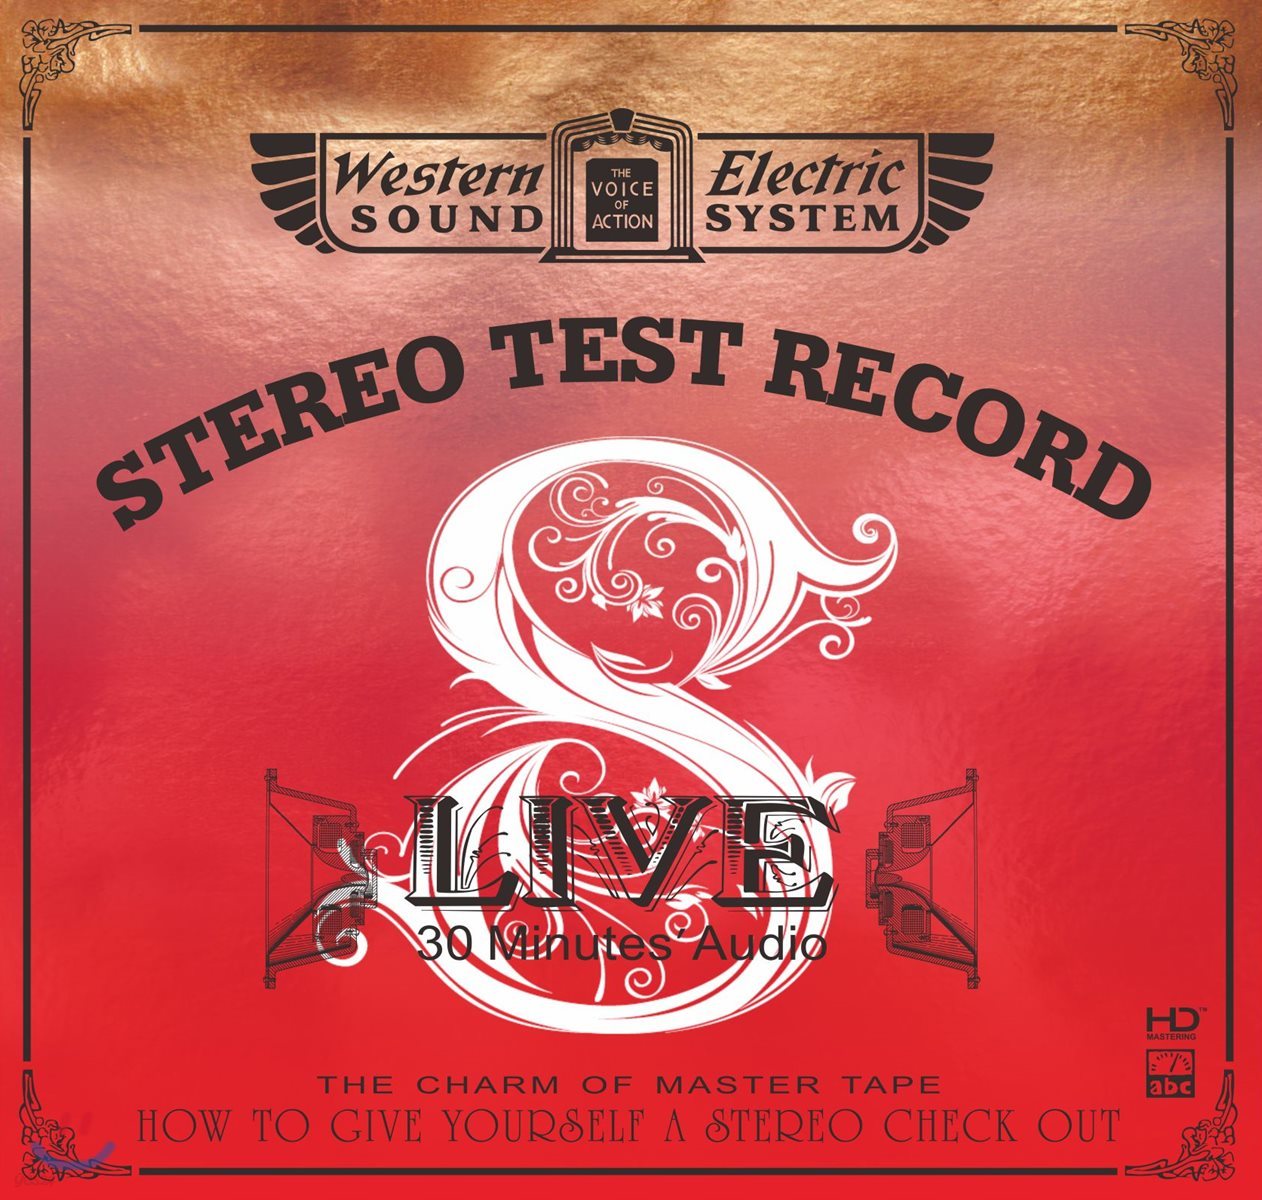 팝 &amp; 재즈 &amp; 클래식 고음질 음악 모음집 (Western Electric Sound : Live 8 - 30 Minutes’ Audio Test CD)